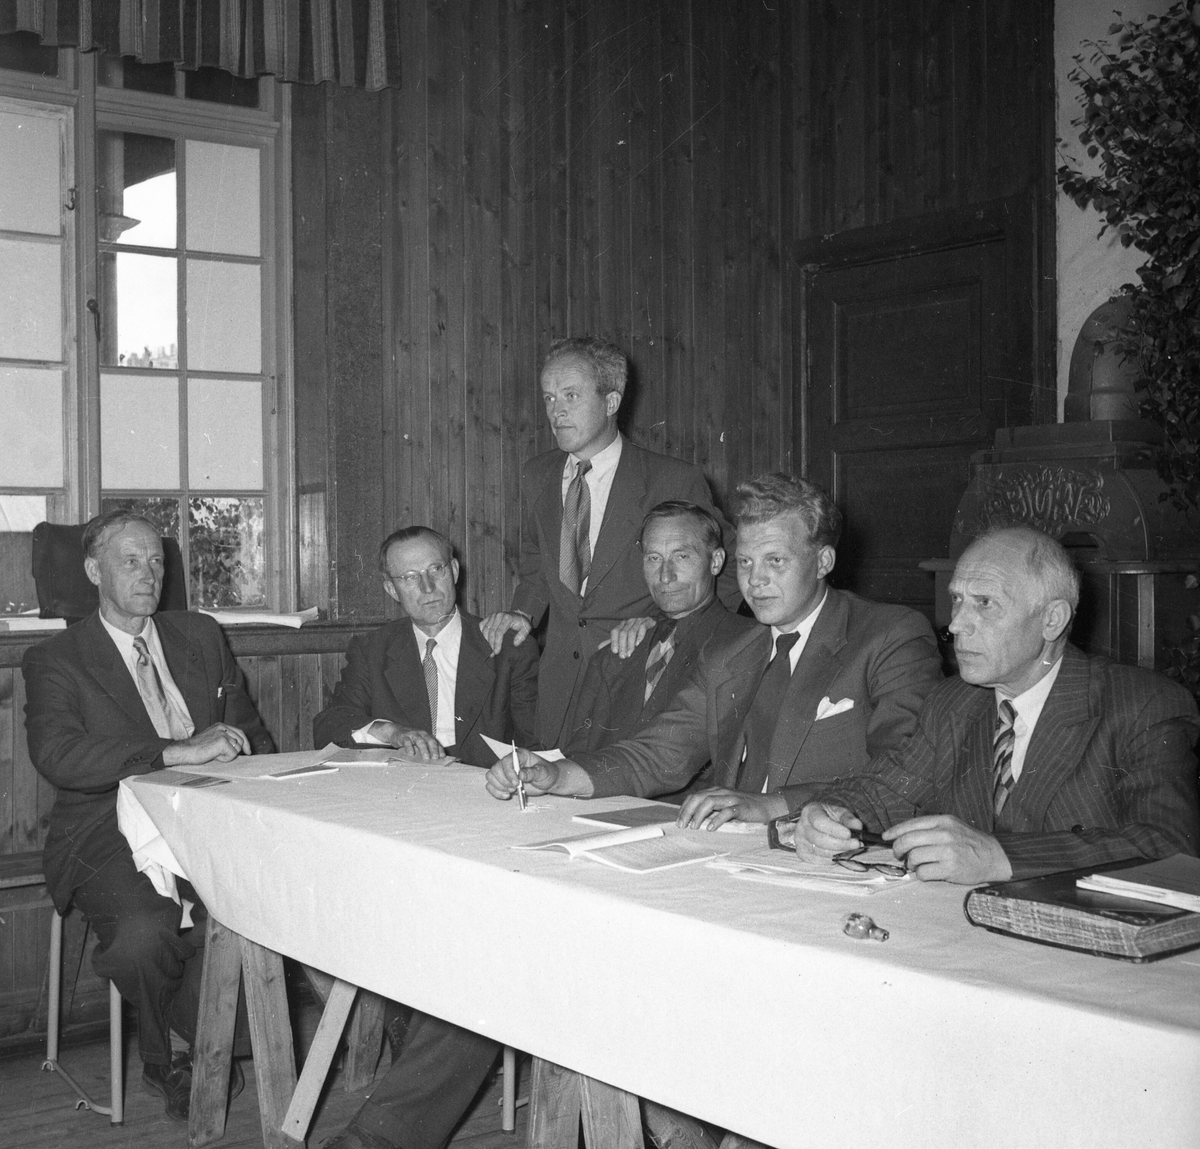 Bilde frå årsmøtet i Telemark landbruksselskap i Treungen i 1954.  